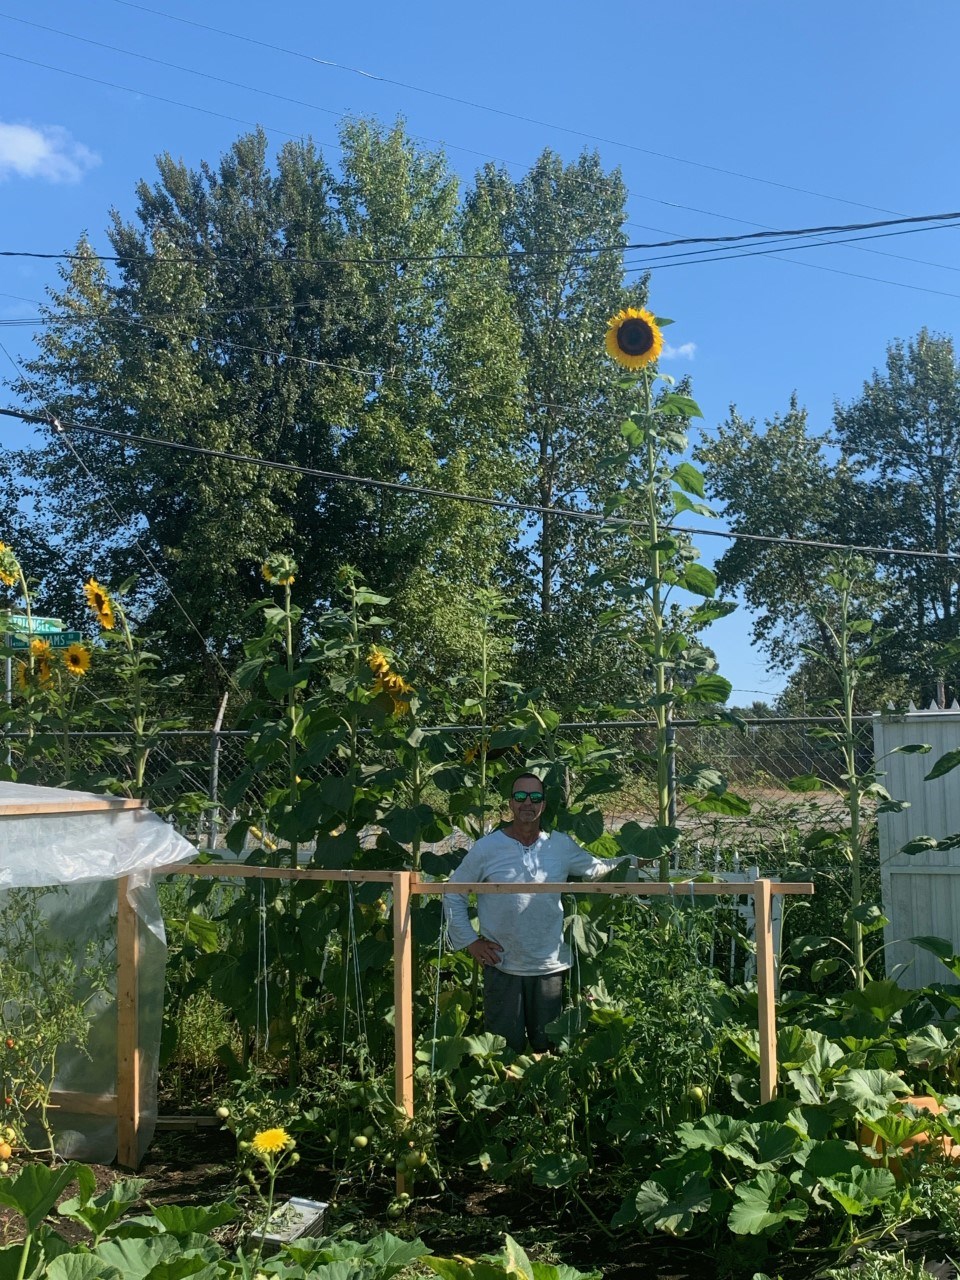 Richmond sunflower - tall